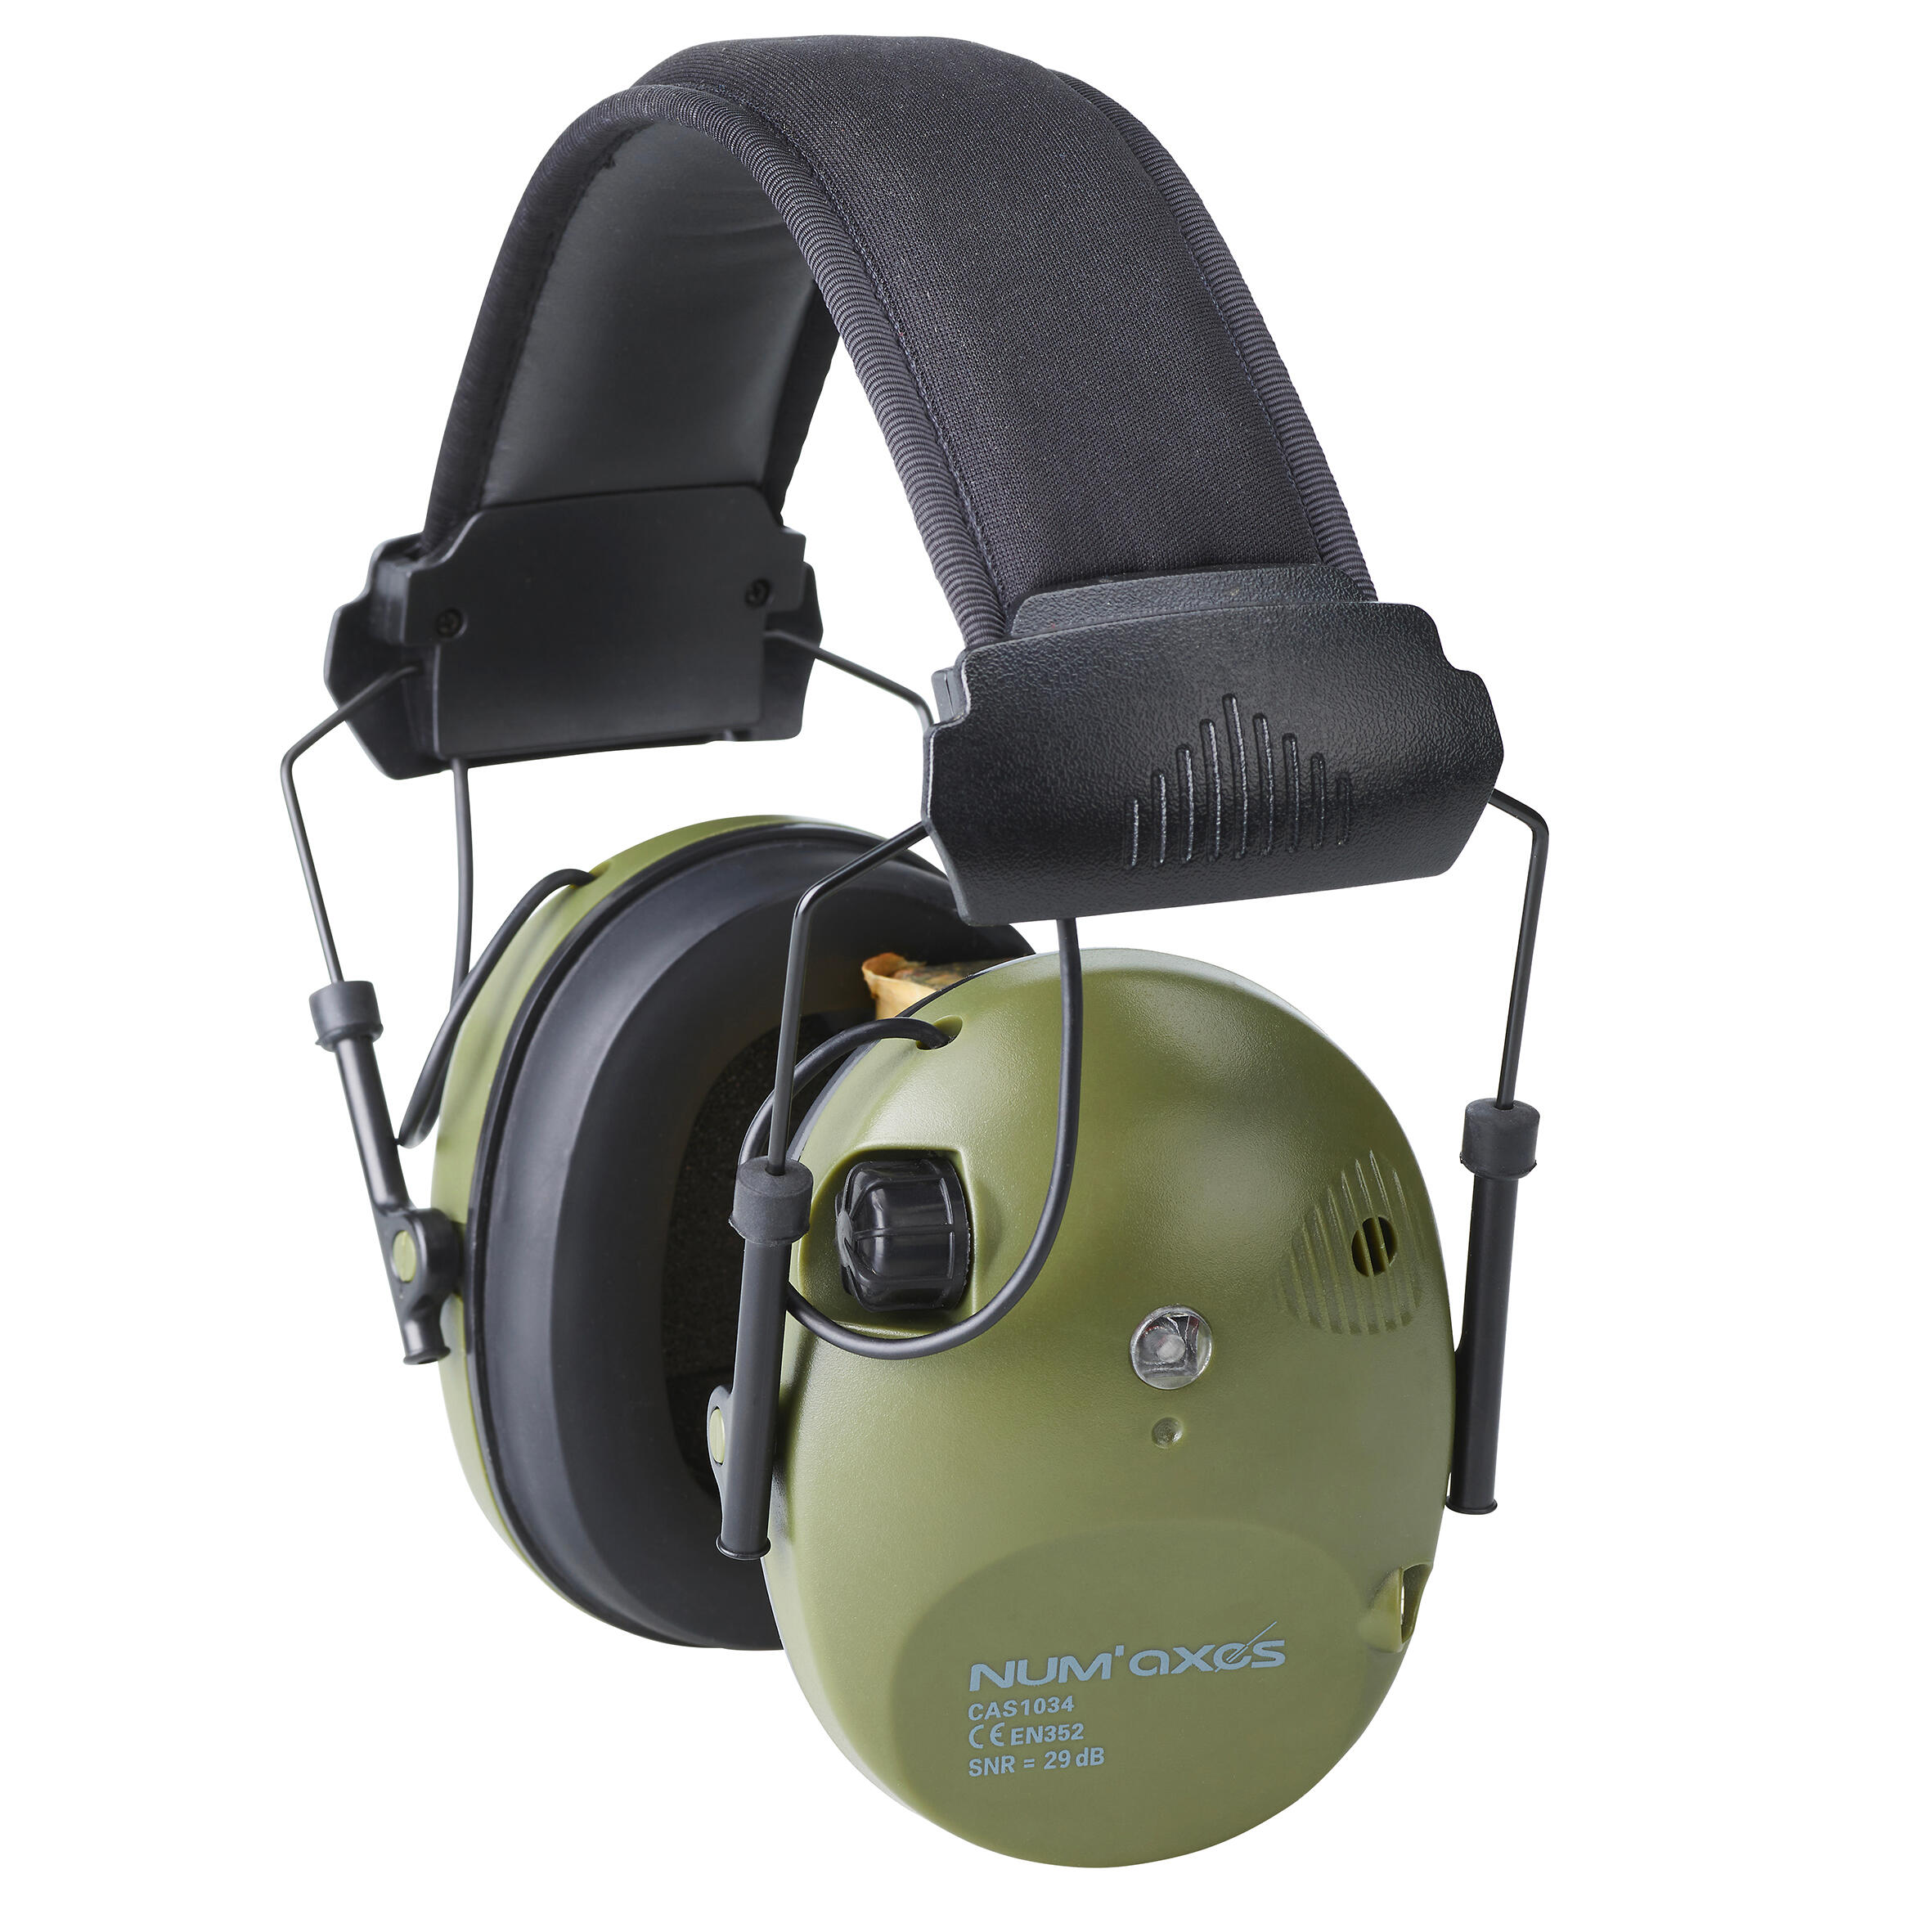 Cască de protecție auditivă electronică anti-zgomot CAS1034 Num Axes Anti-Zgomot imagine 2022